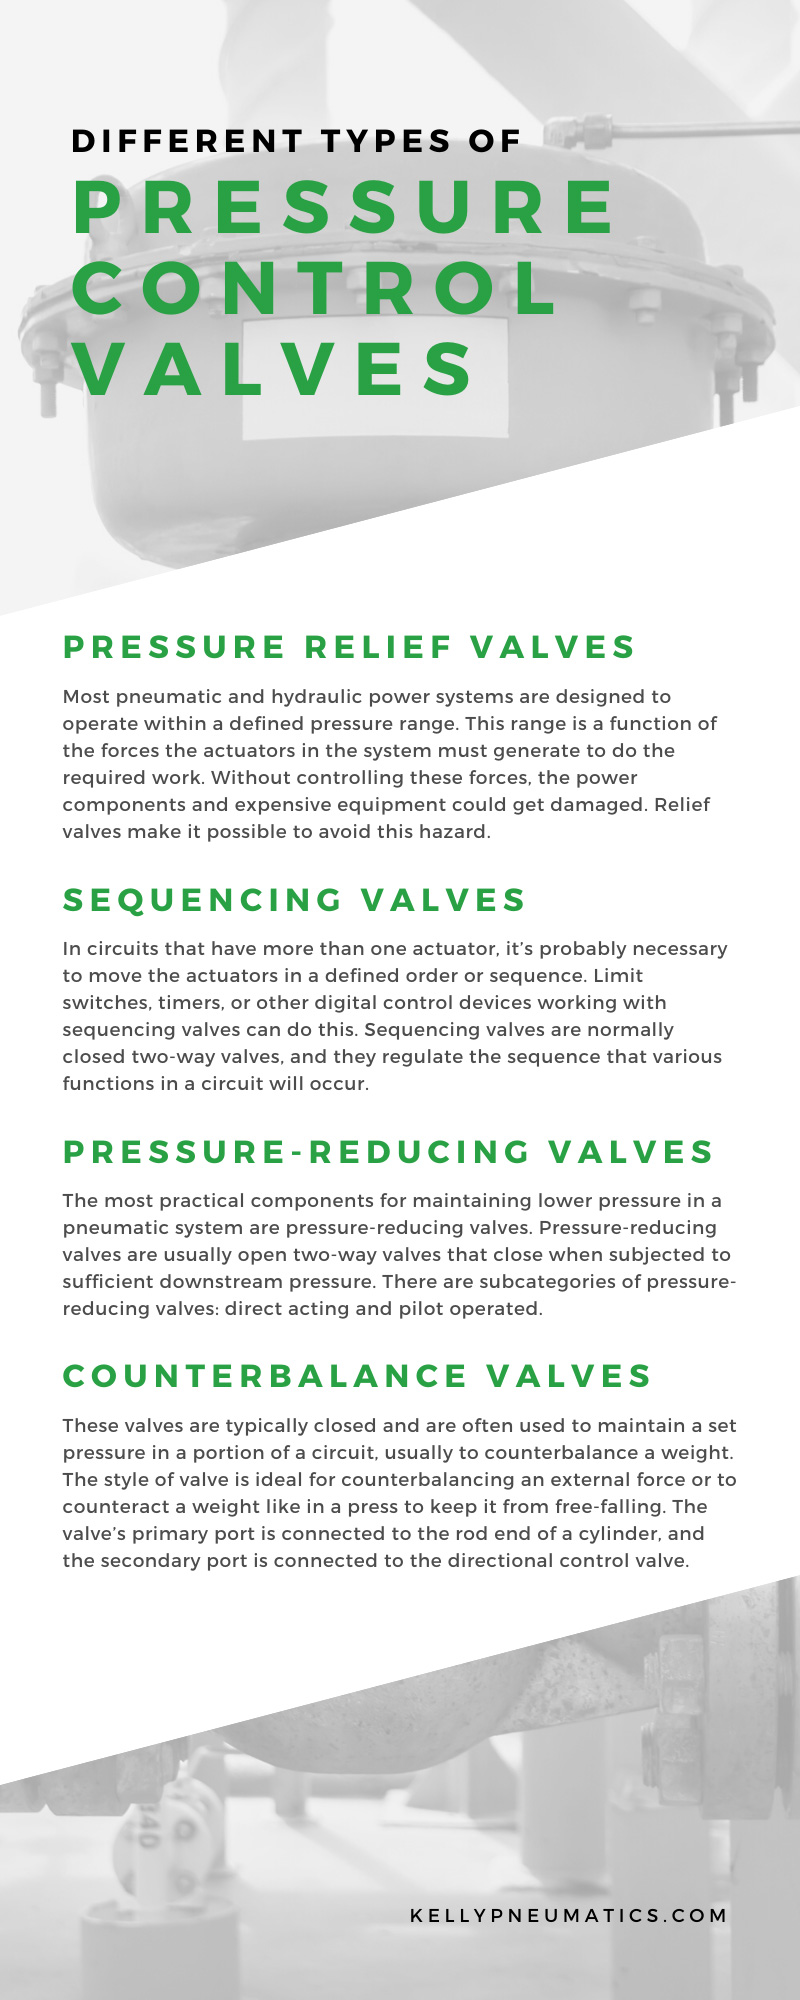 Pressure Control Valves